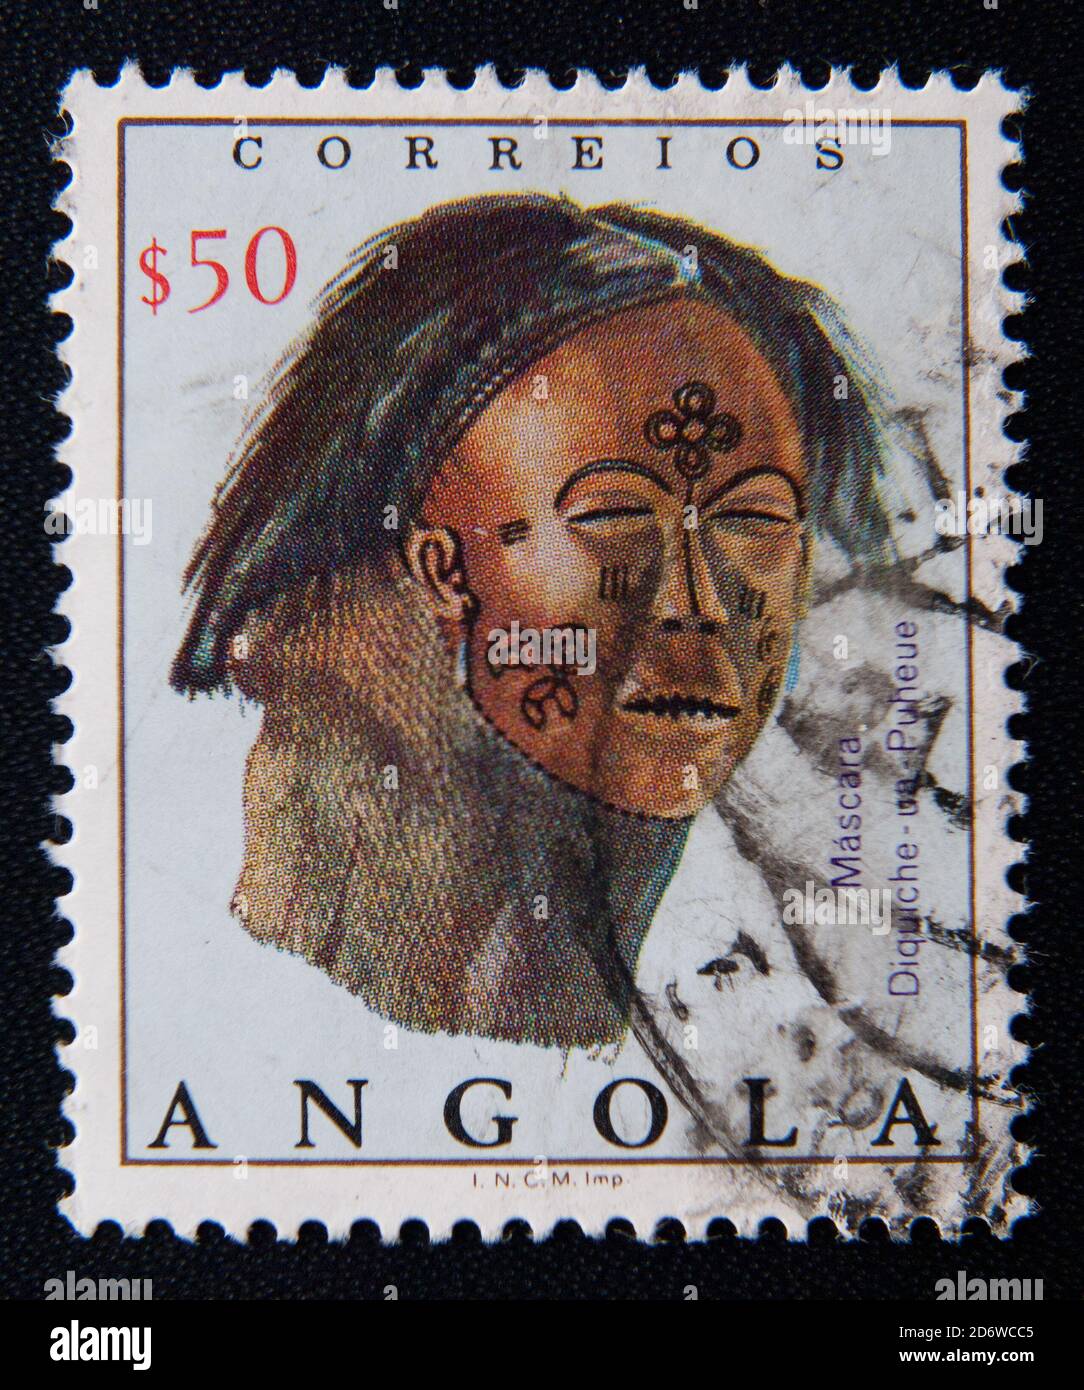 MOSCOU RUSSIE - 25 NOVEMBRE 2012 : un timbre imprimé en Angola montre un masque en cuir avec une décoration peinte, vers 1976 Banque D'Images